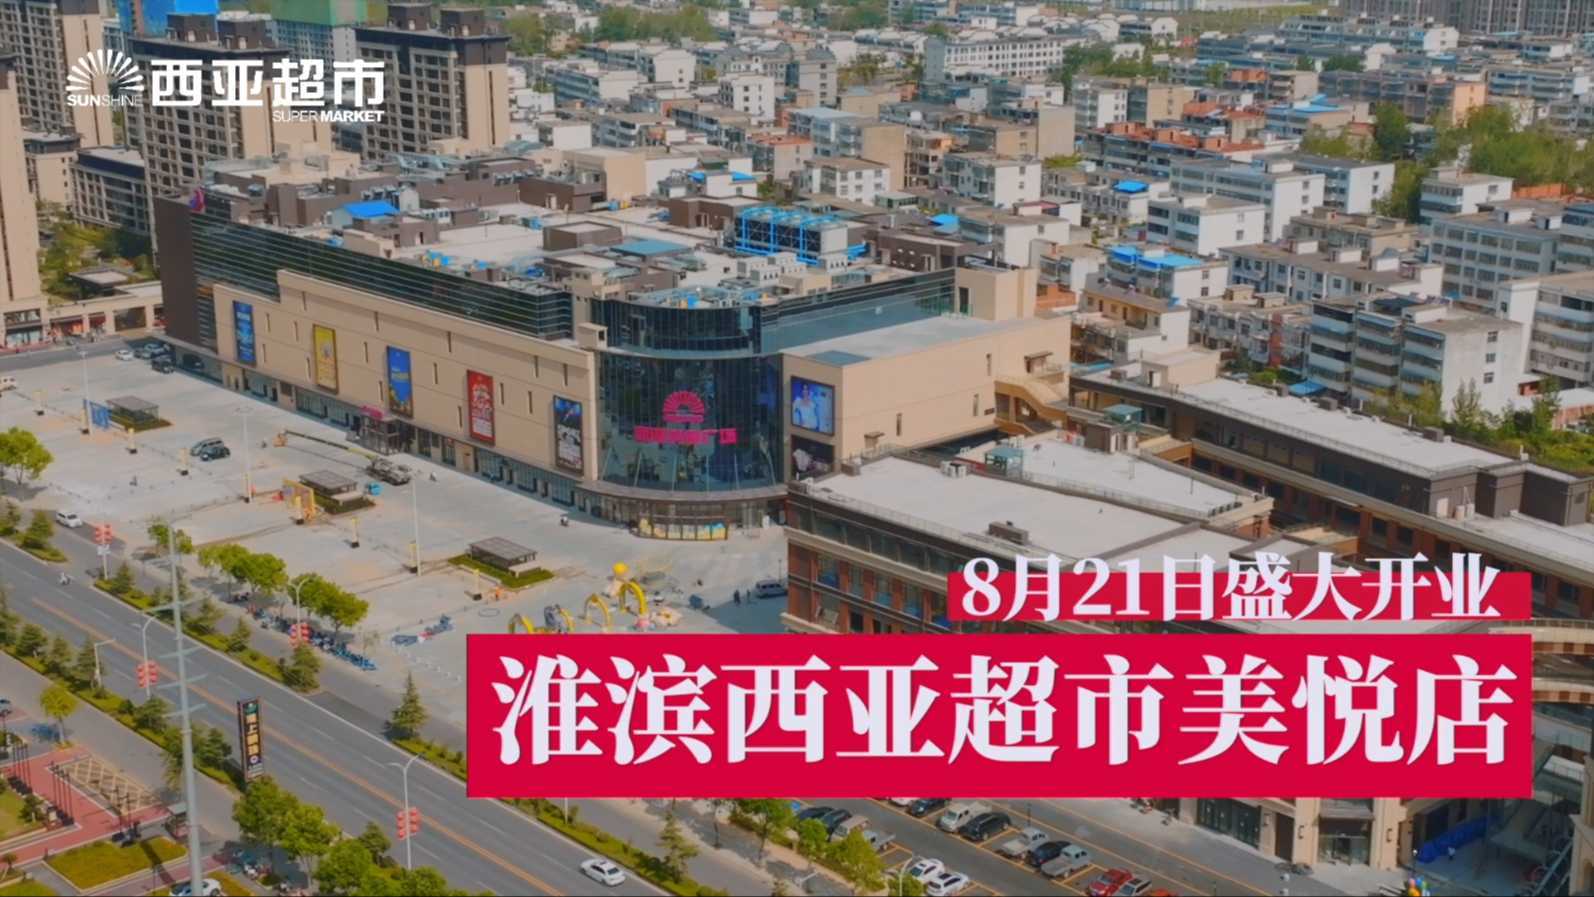 西亚超市淮滨美悦店 开业大喜  优惠活动享不停